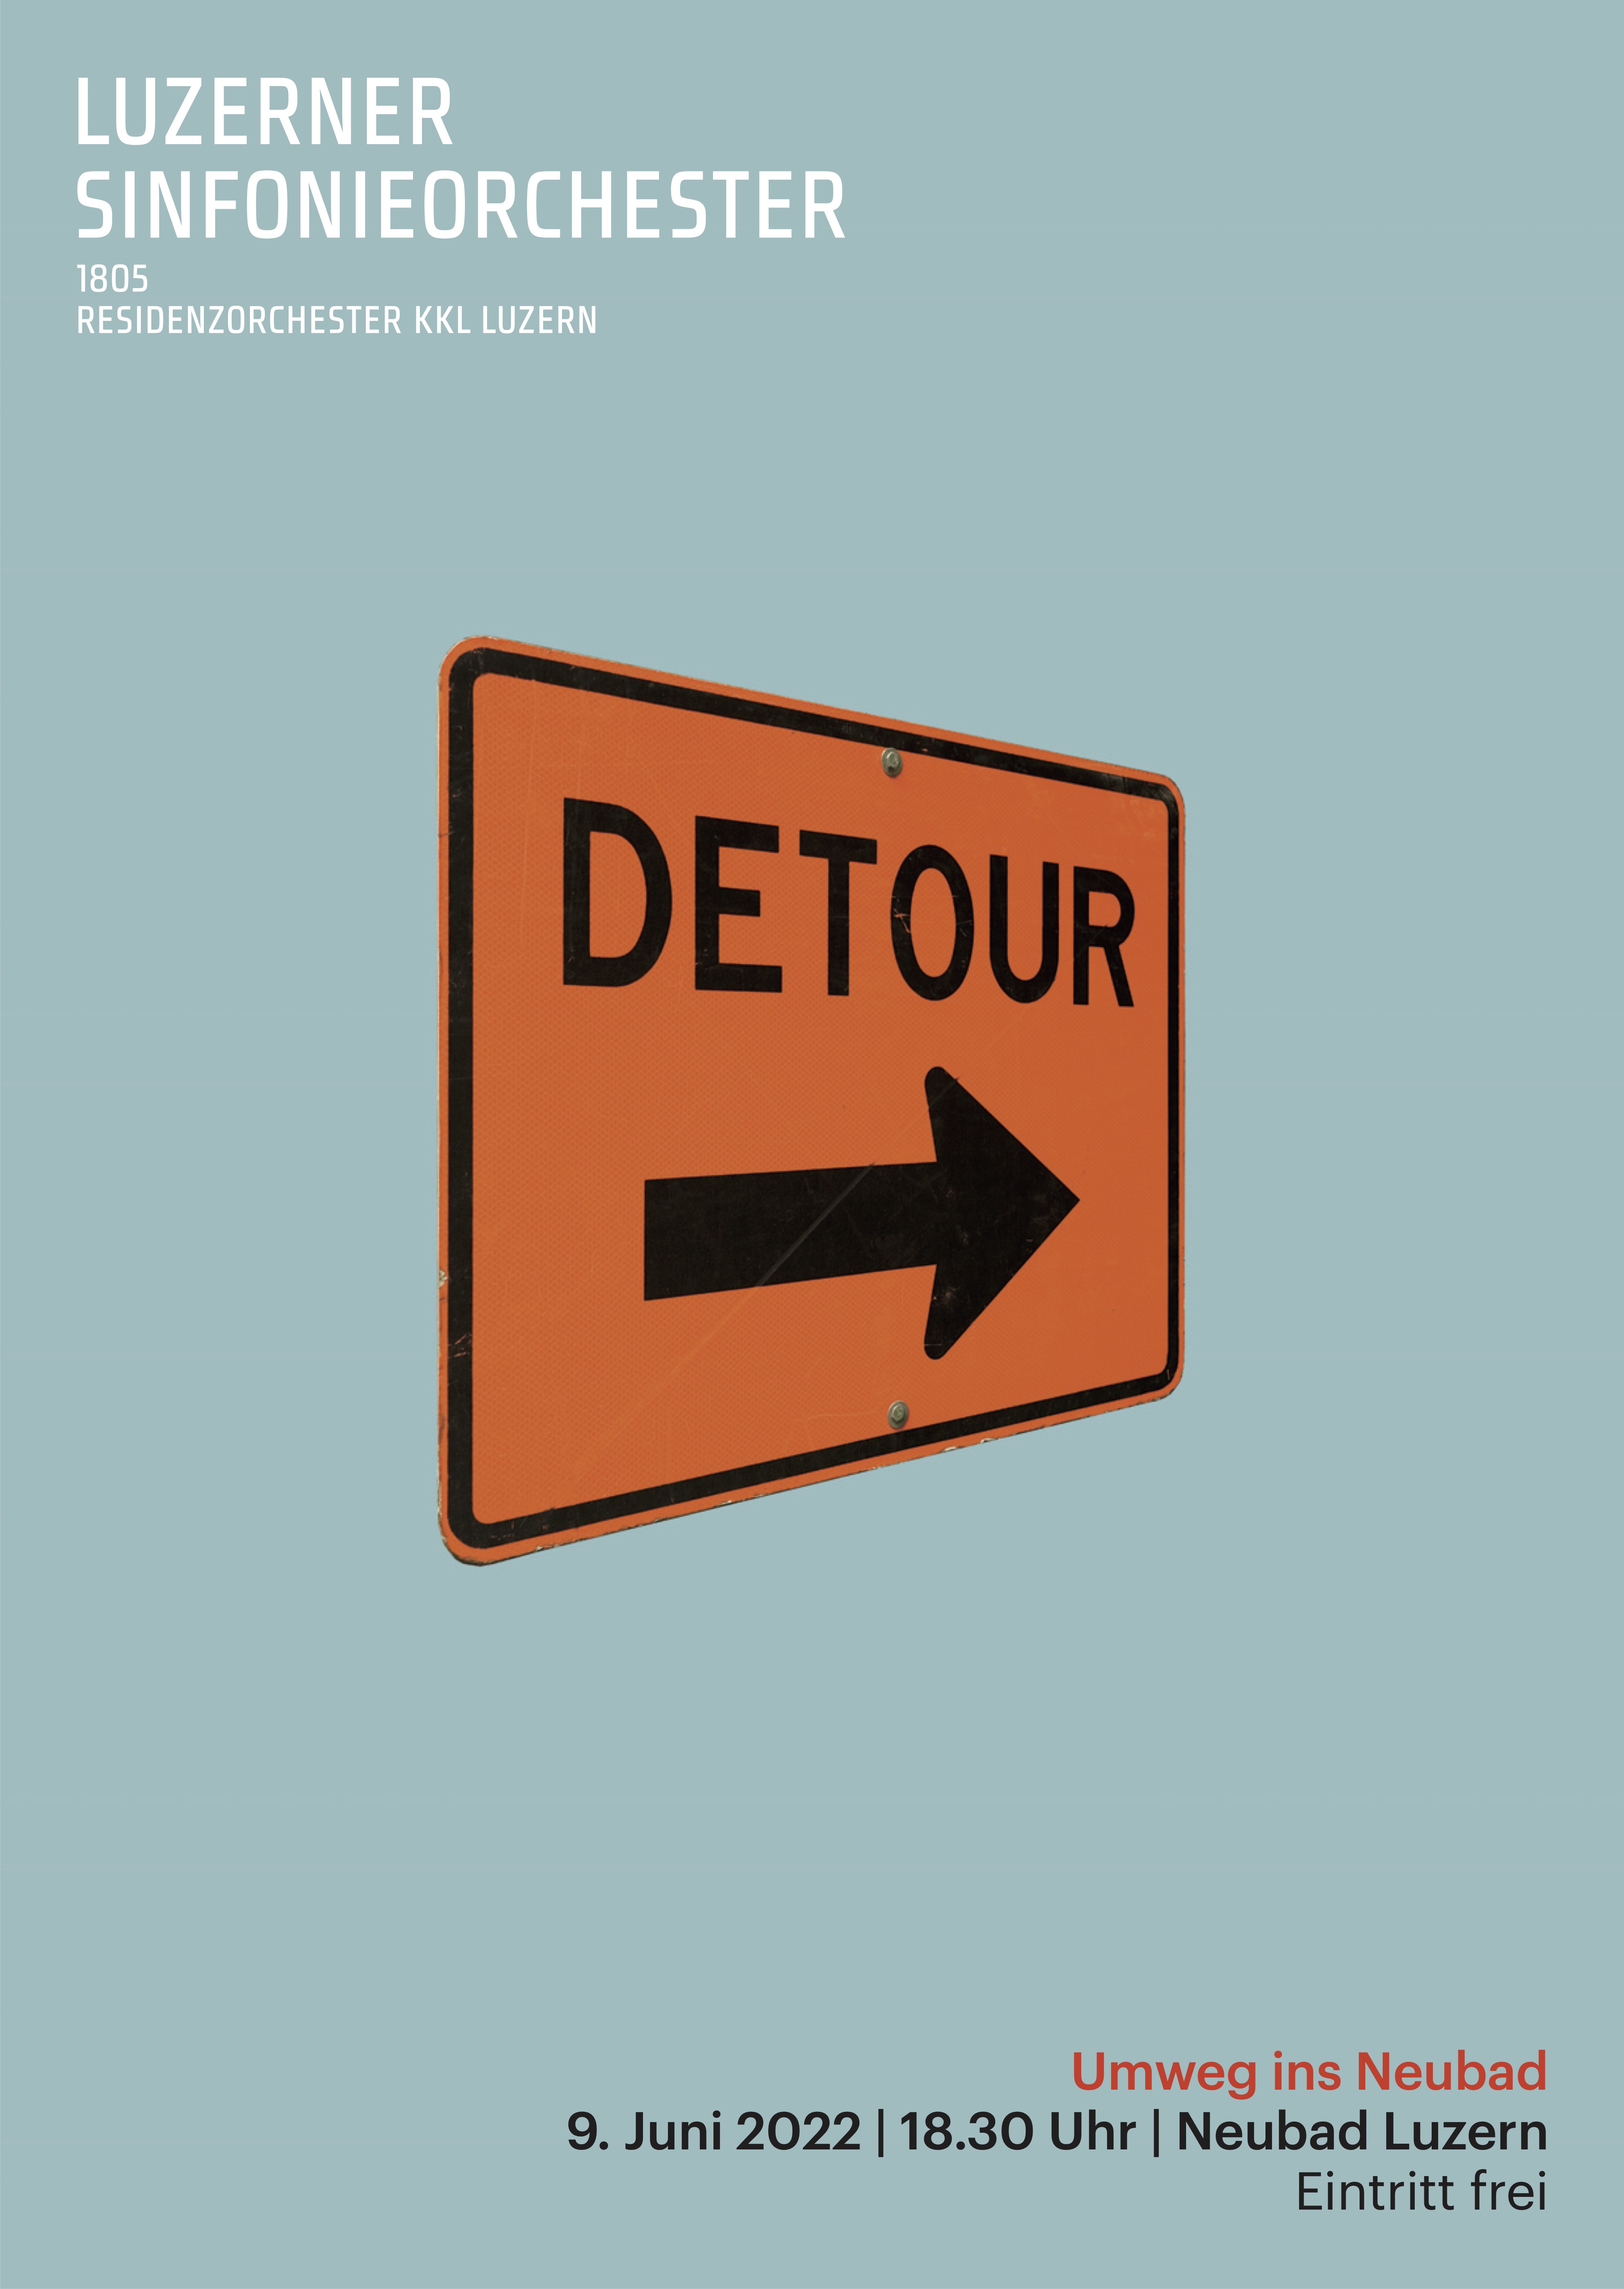 Ein Flyer für das Konzert des LSO. Hintergrund ist blau, in der MItte des Flyers ist ein oranges Schild mit dem SChriftzug "Detour" und einem Pfeil nach rechts.